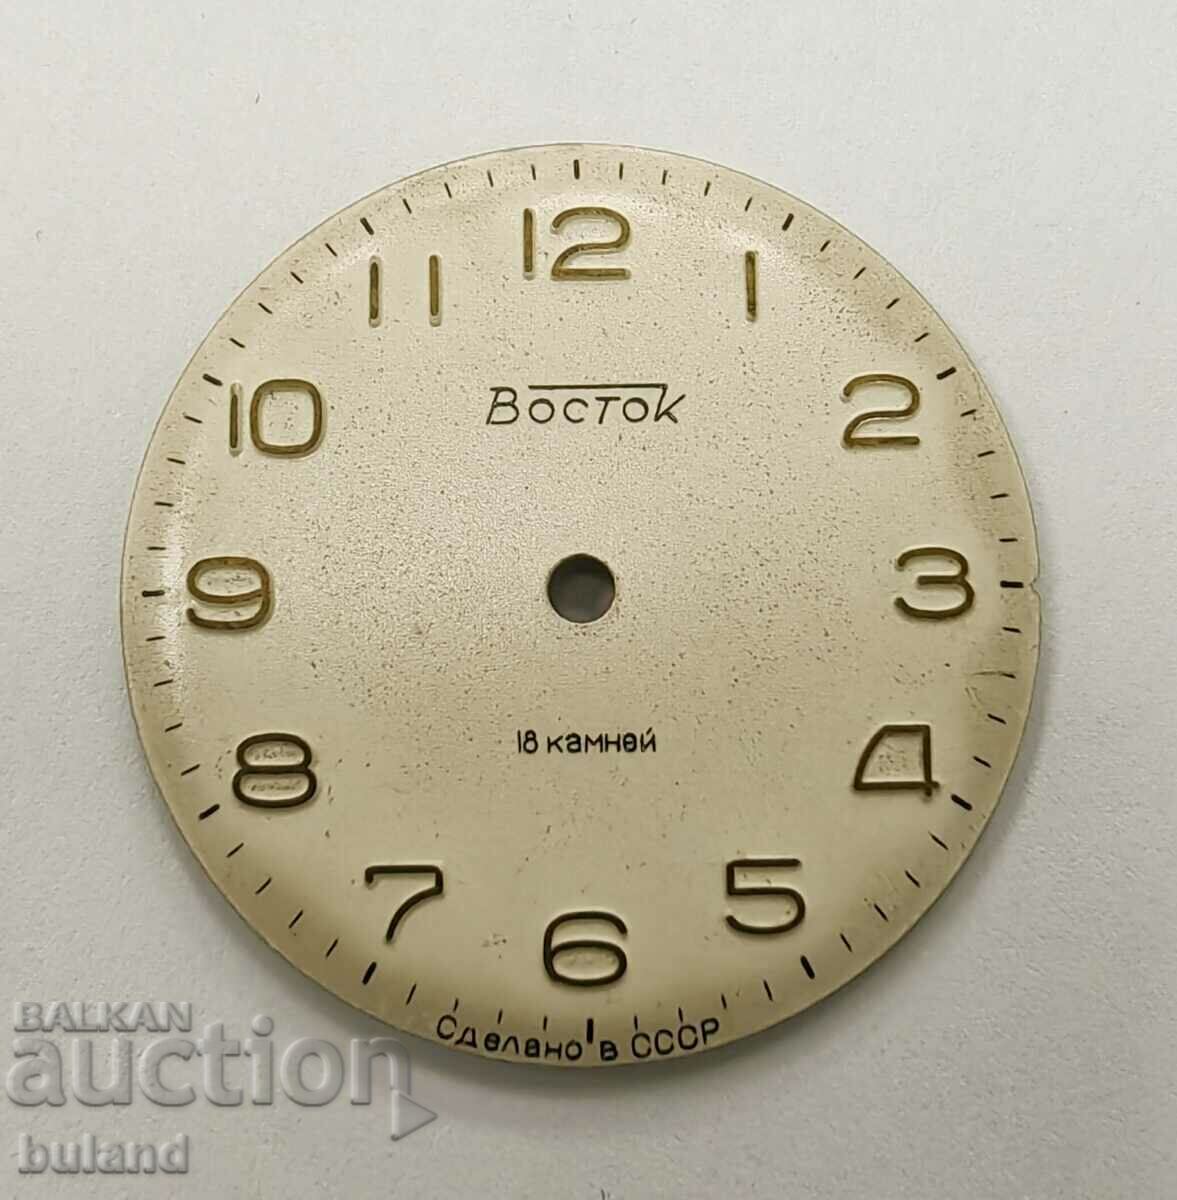 Γνήσιο σοβιετικό ρολόι Dial Vostok Wostok USSR